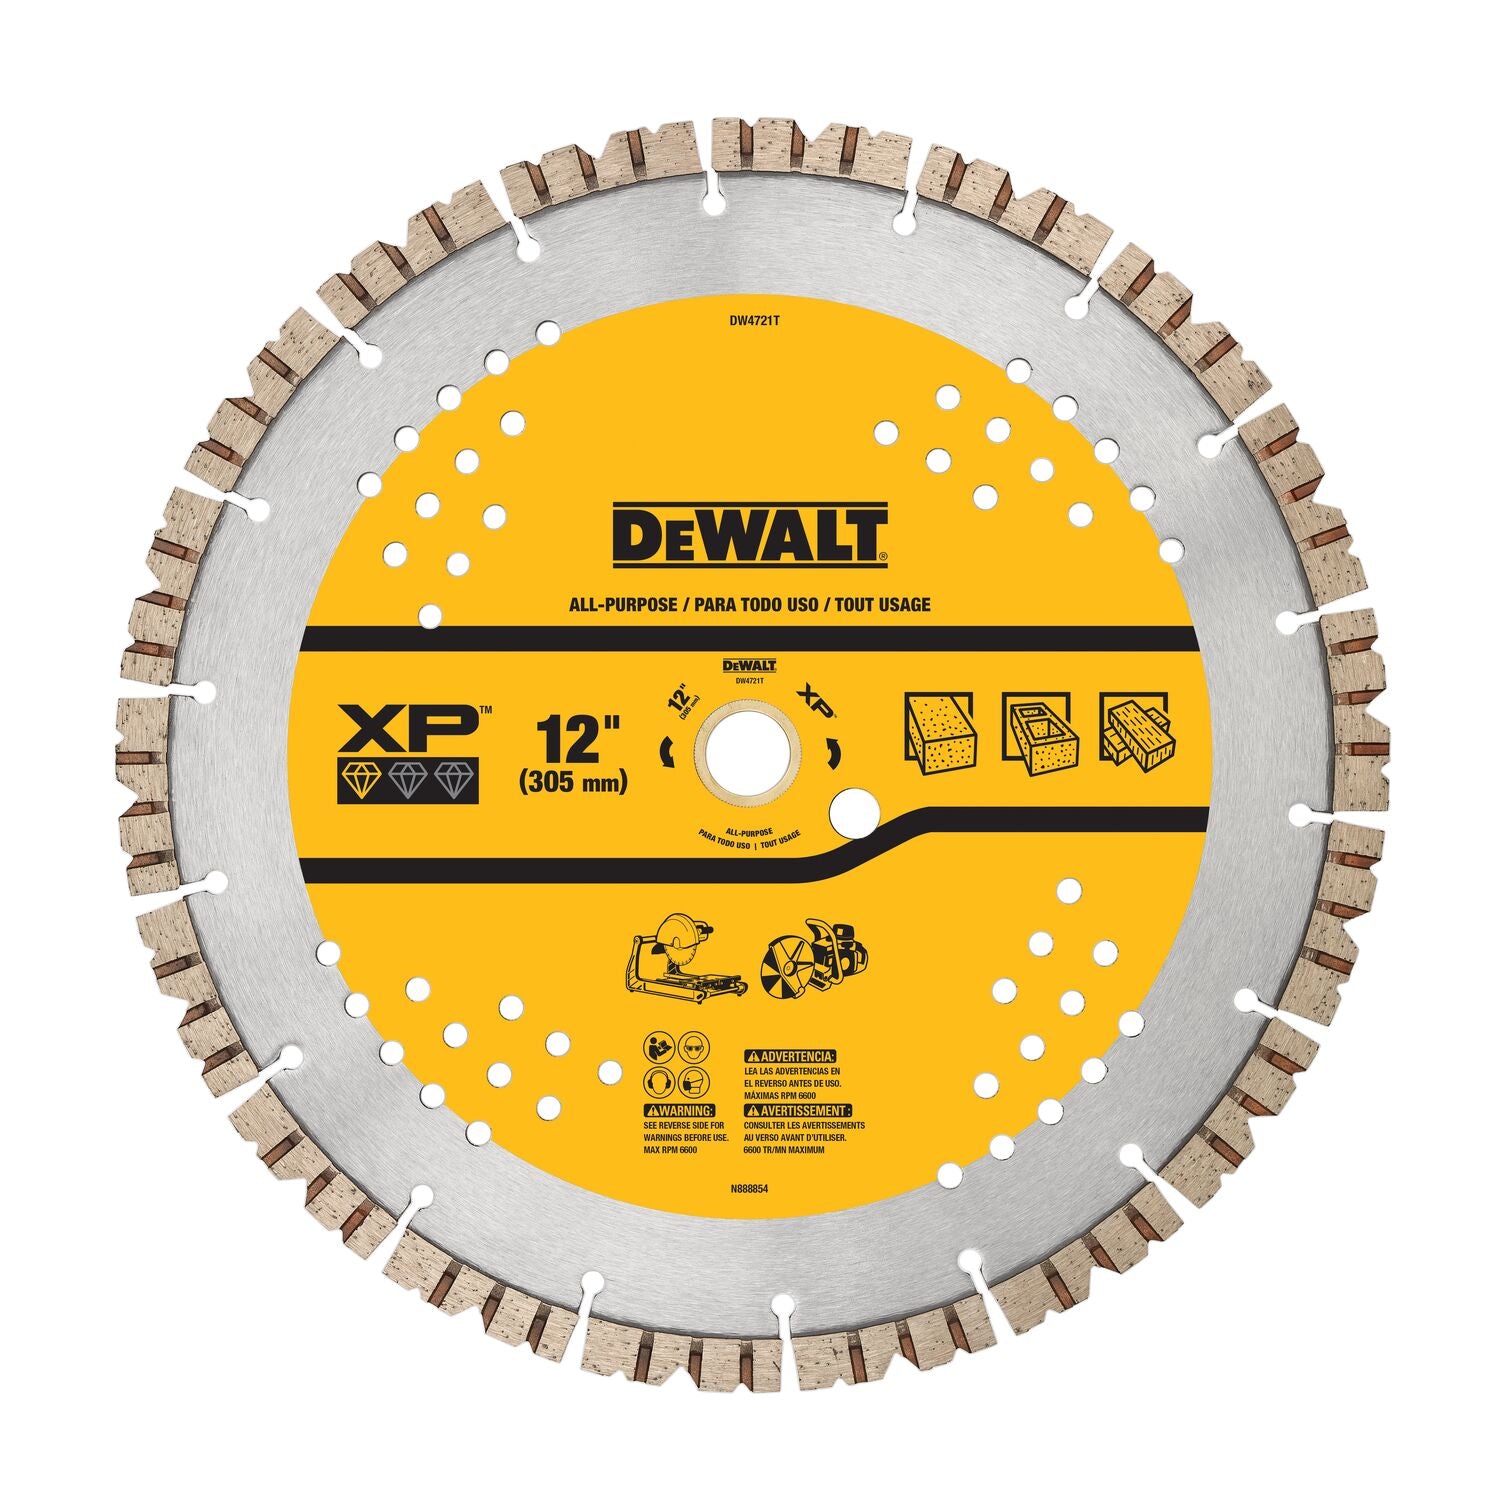 Dewalt DW4721T - 12" Segmented Rim  Fast Cut Blade